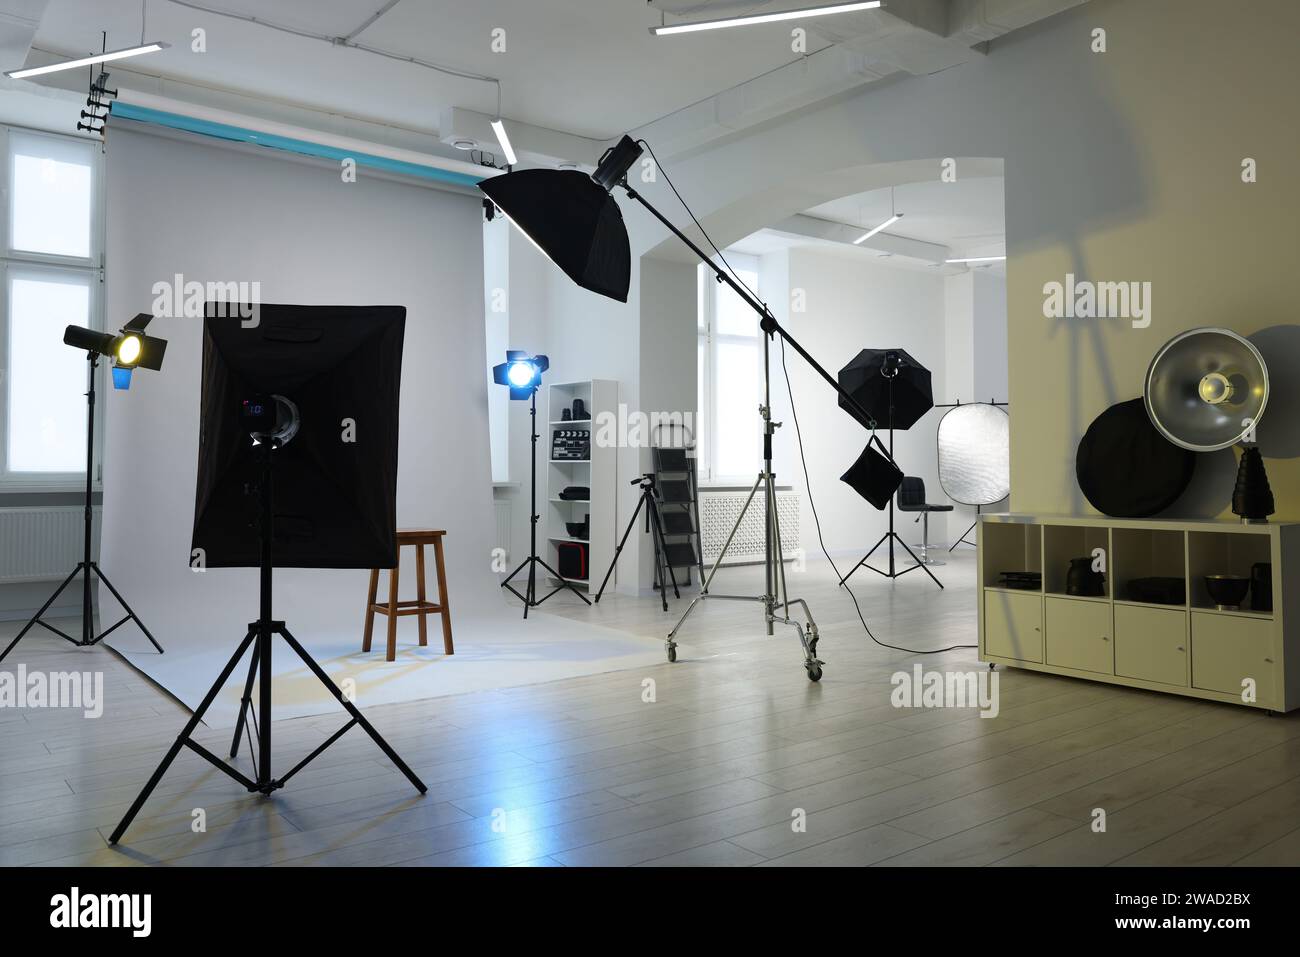 Tabouret et différents équipements pour le moulage en studio Banque D'Images